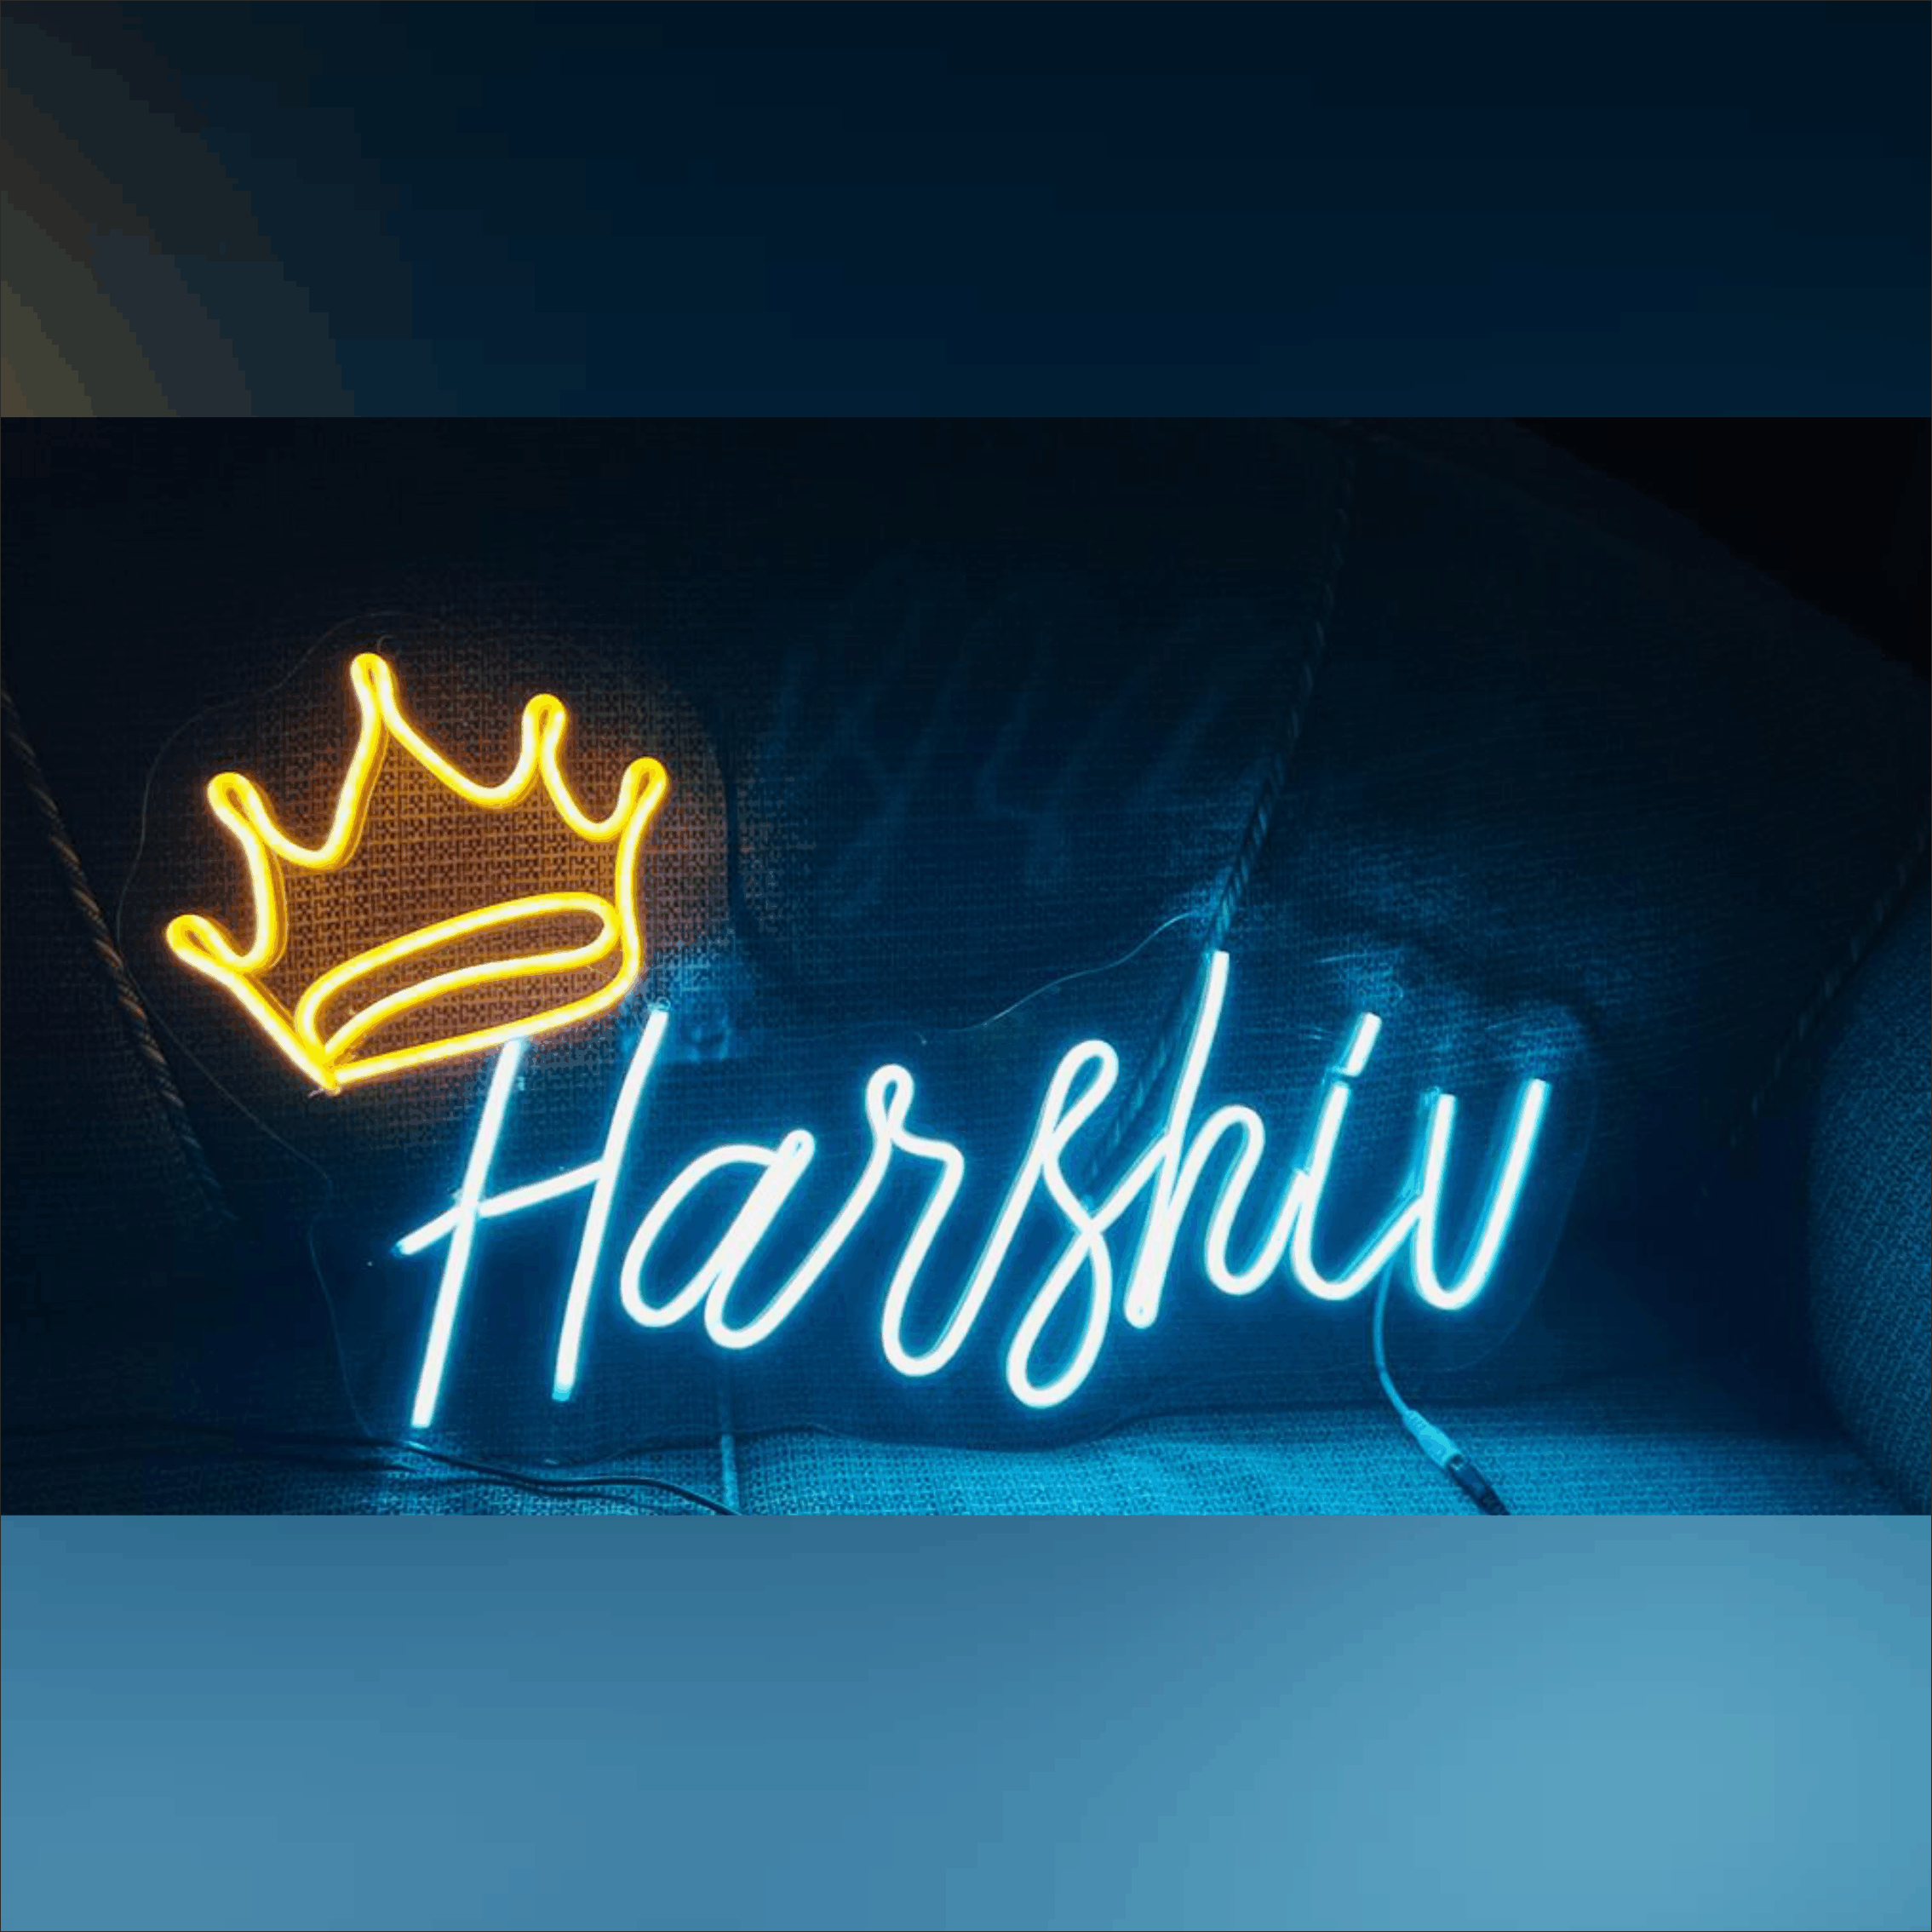 Harshu name neon sign